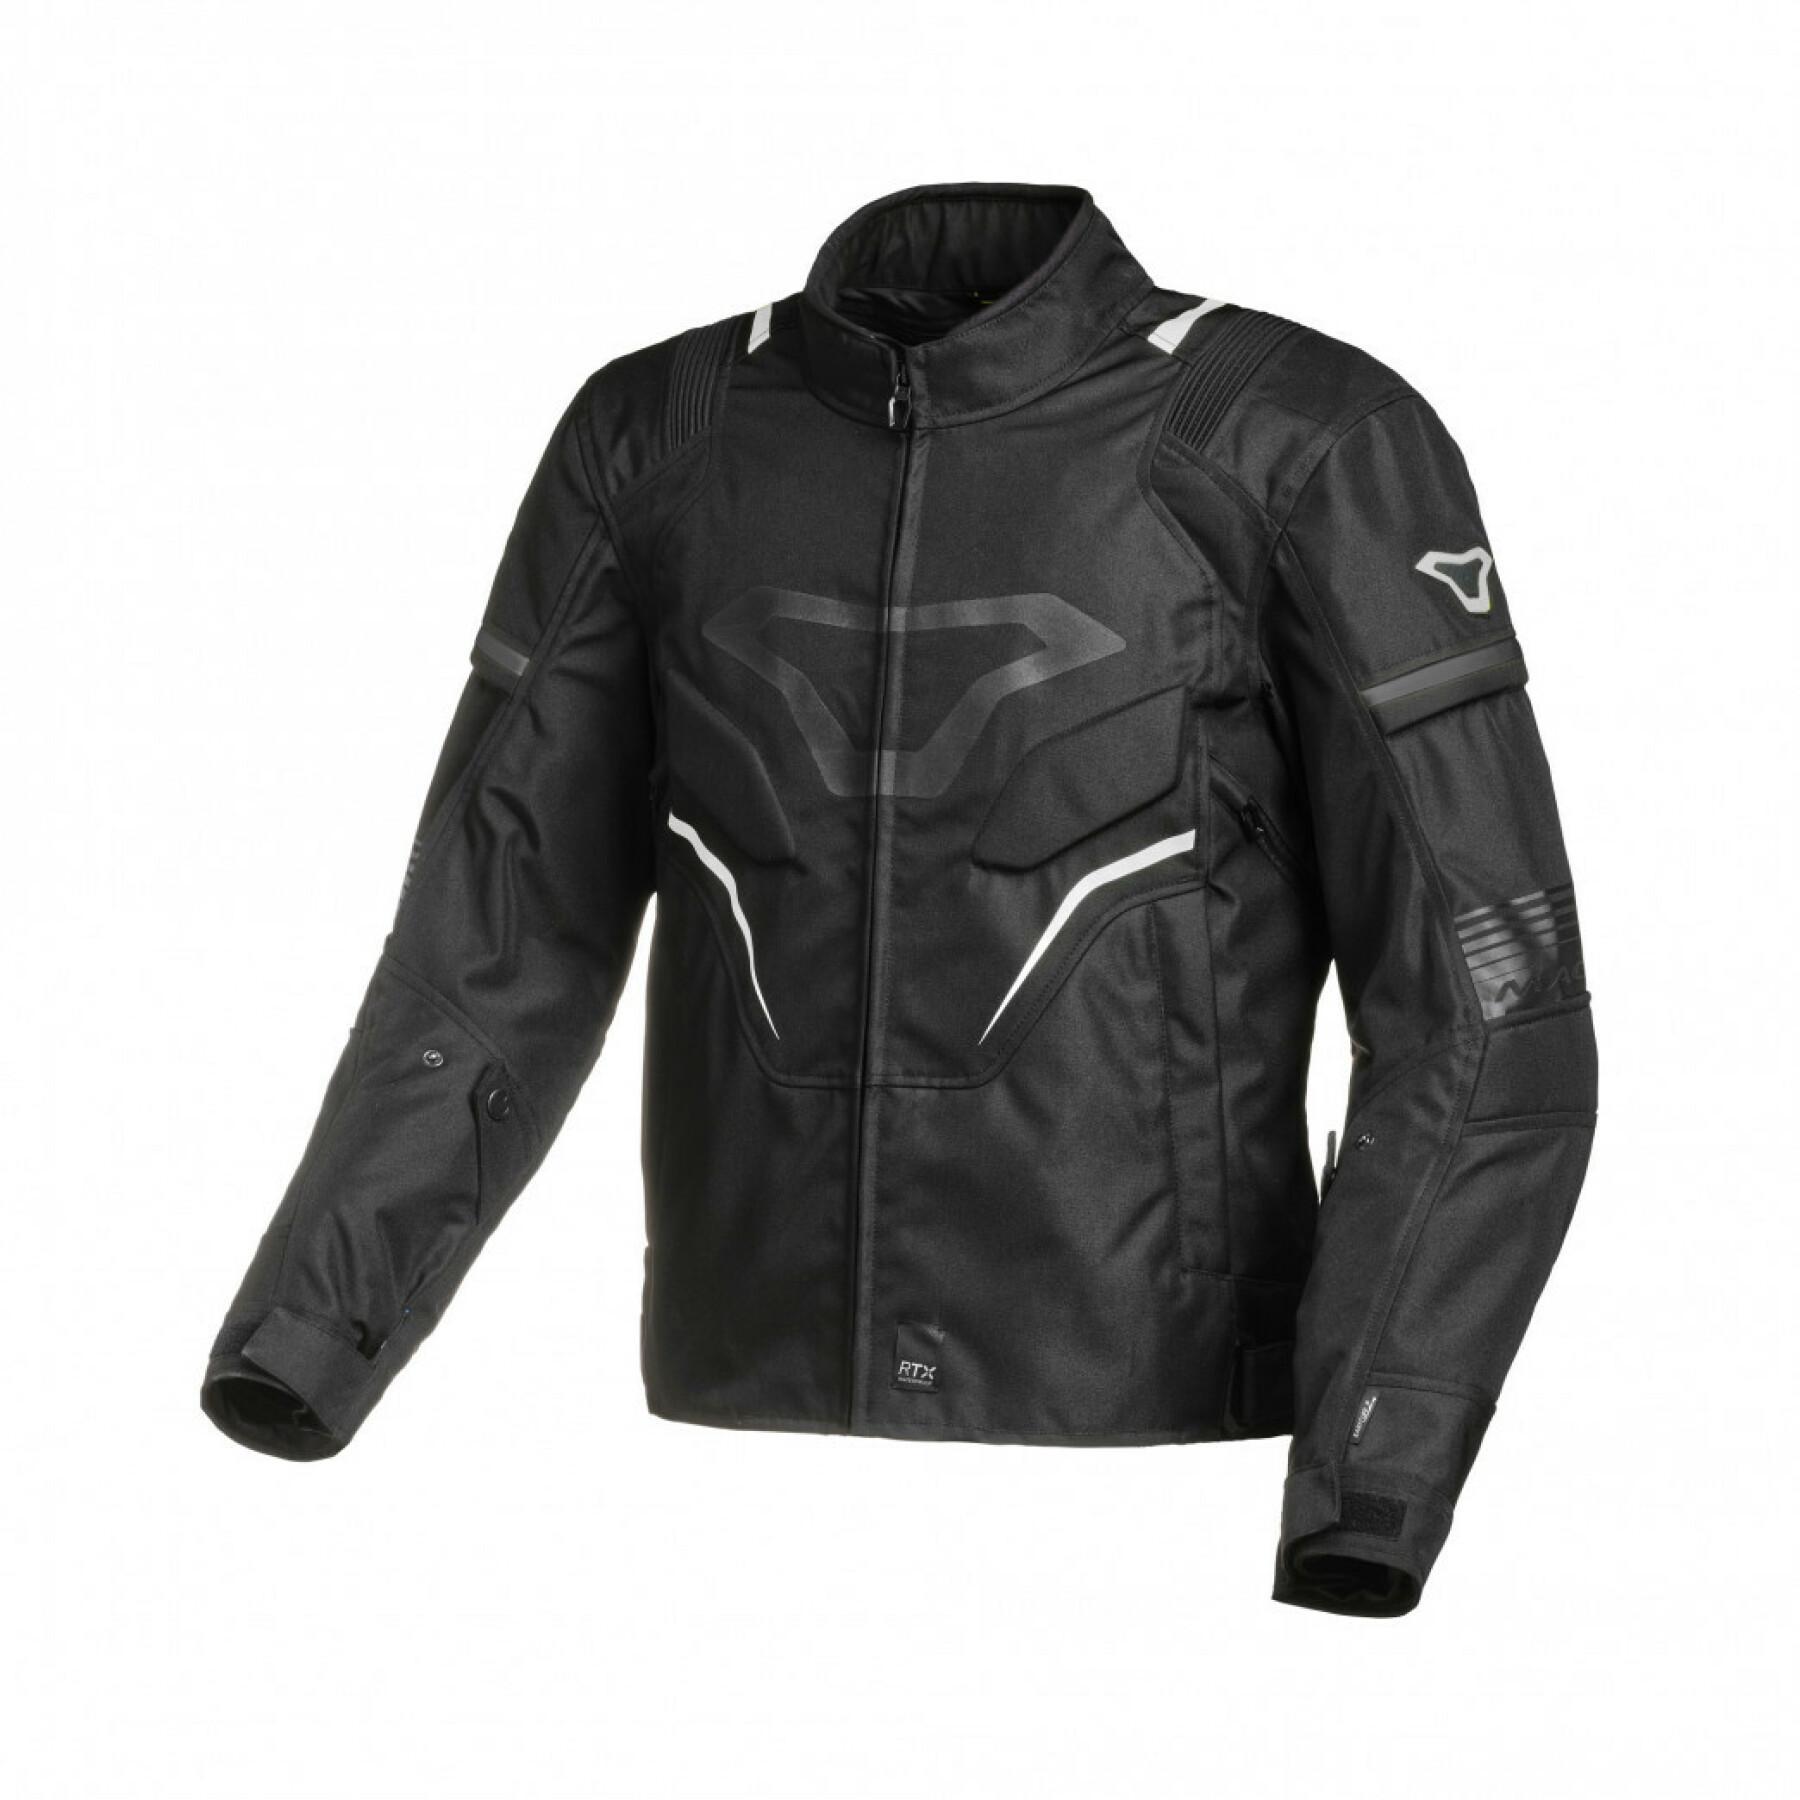 Motorcycle jacket Macna Adept